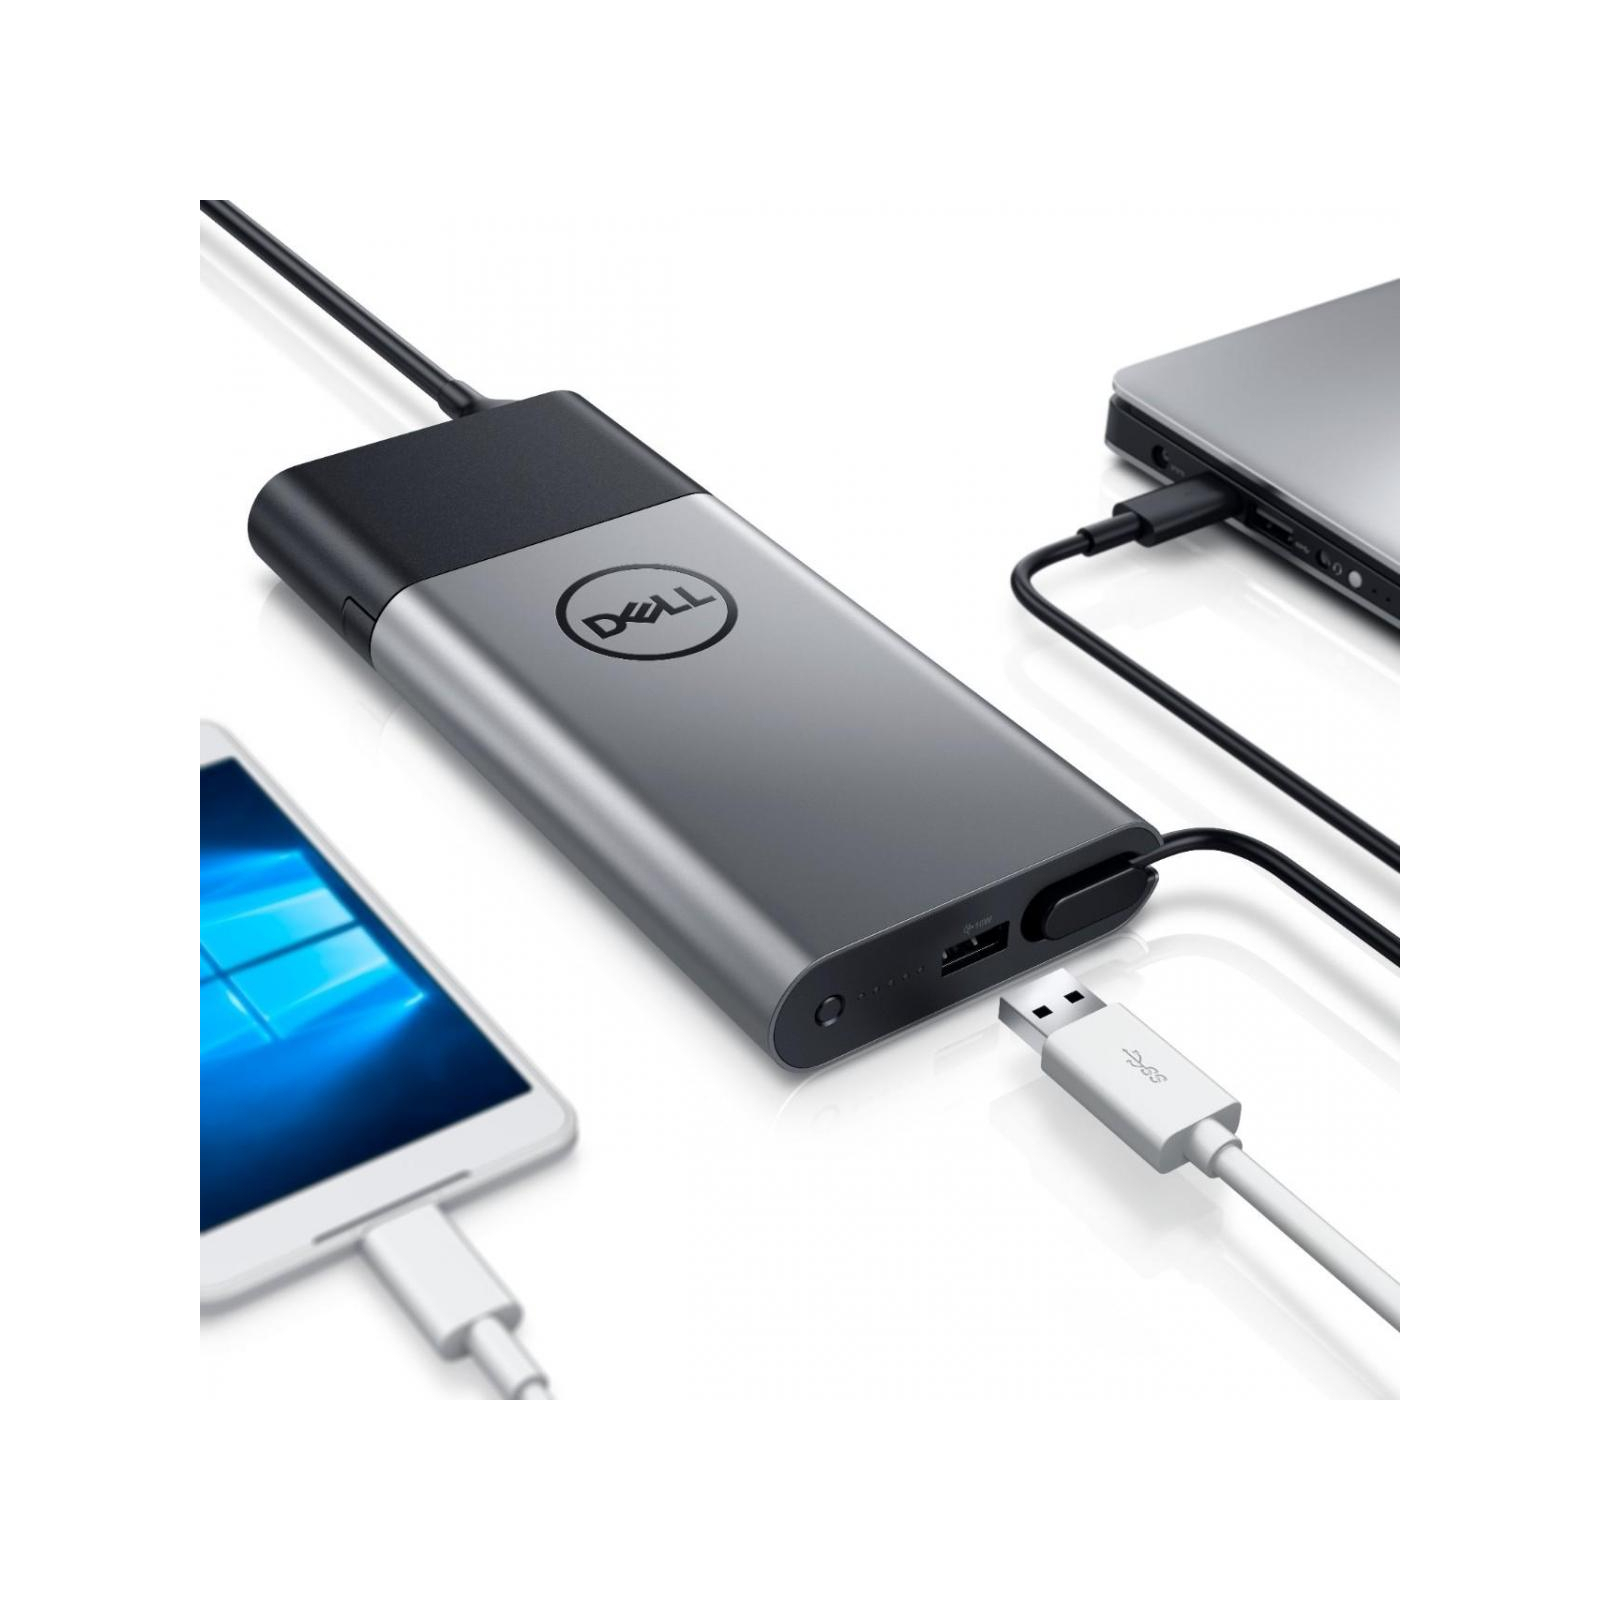 Батарея універсальна Dell Hybrid Adapter + Power Bank USB-C 12800mAh (450-AGHQ) зображення 3